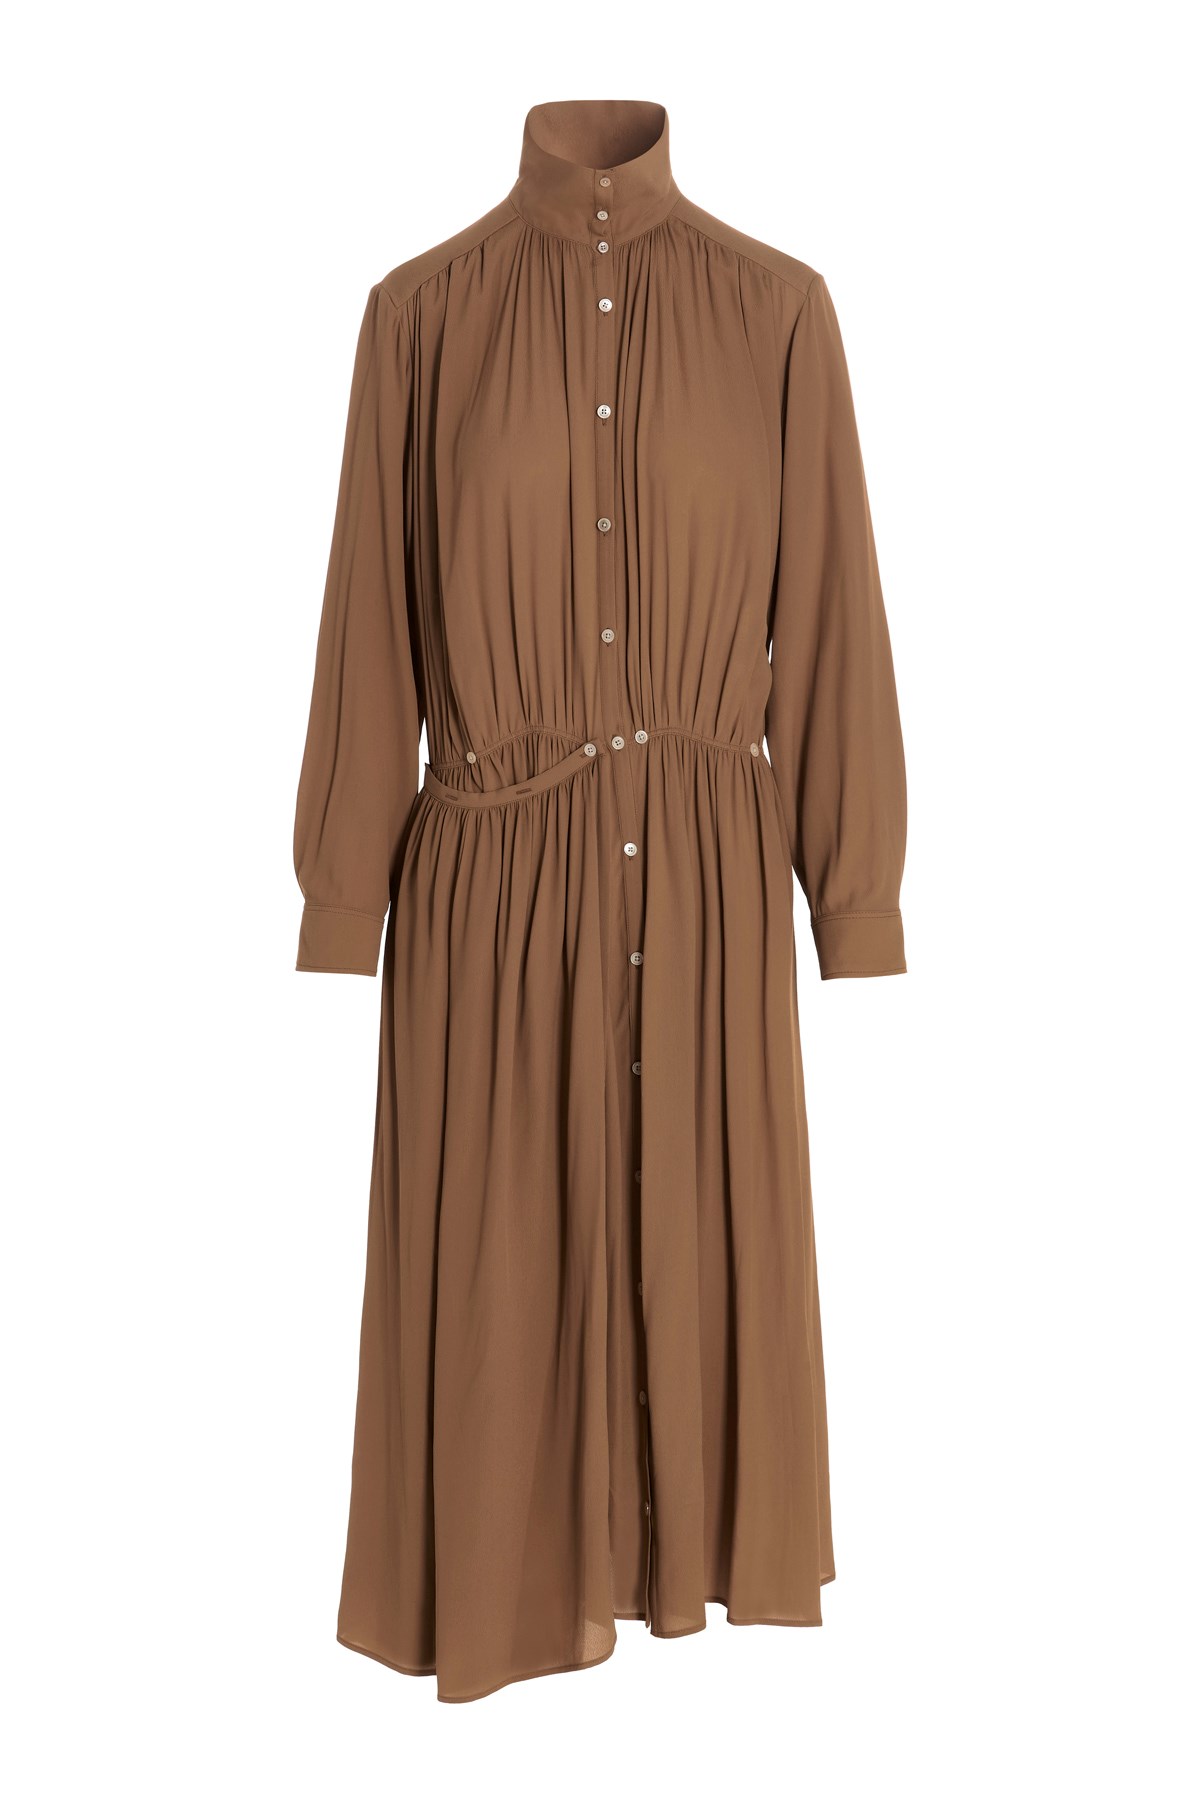 LEMAIRE 'Apron’ Dress